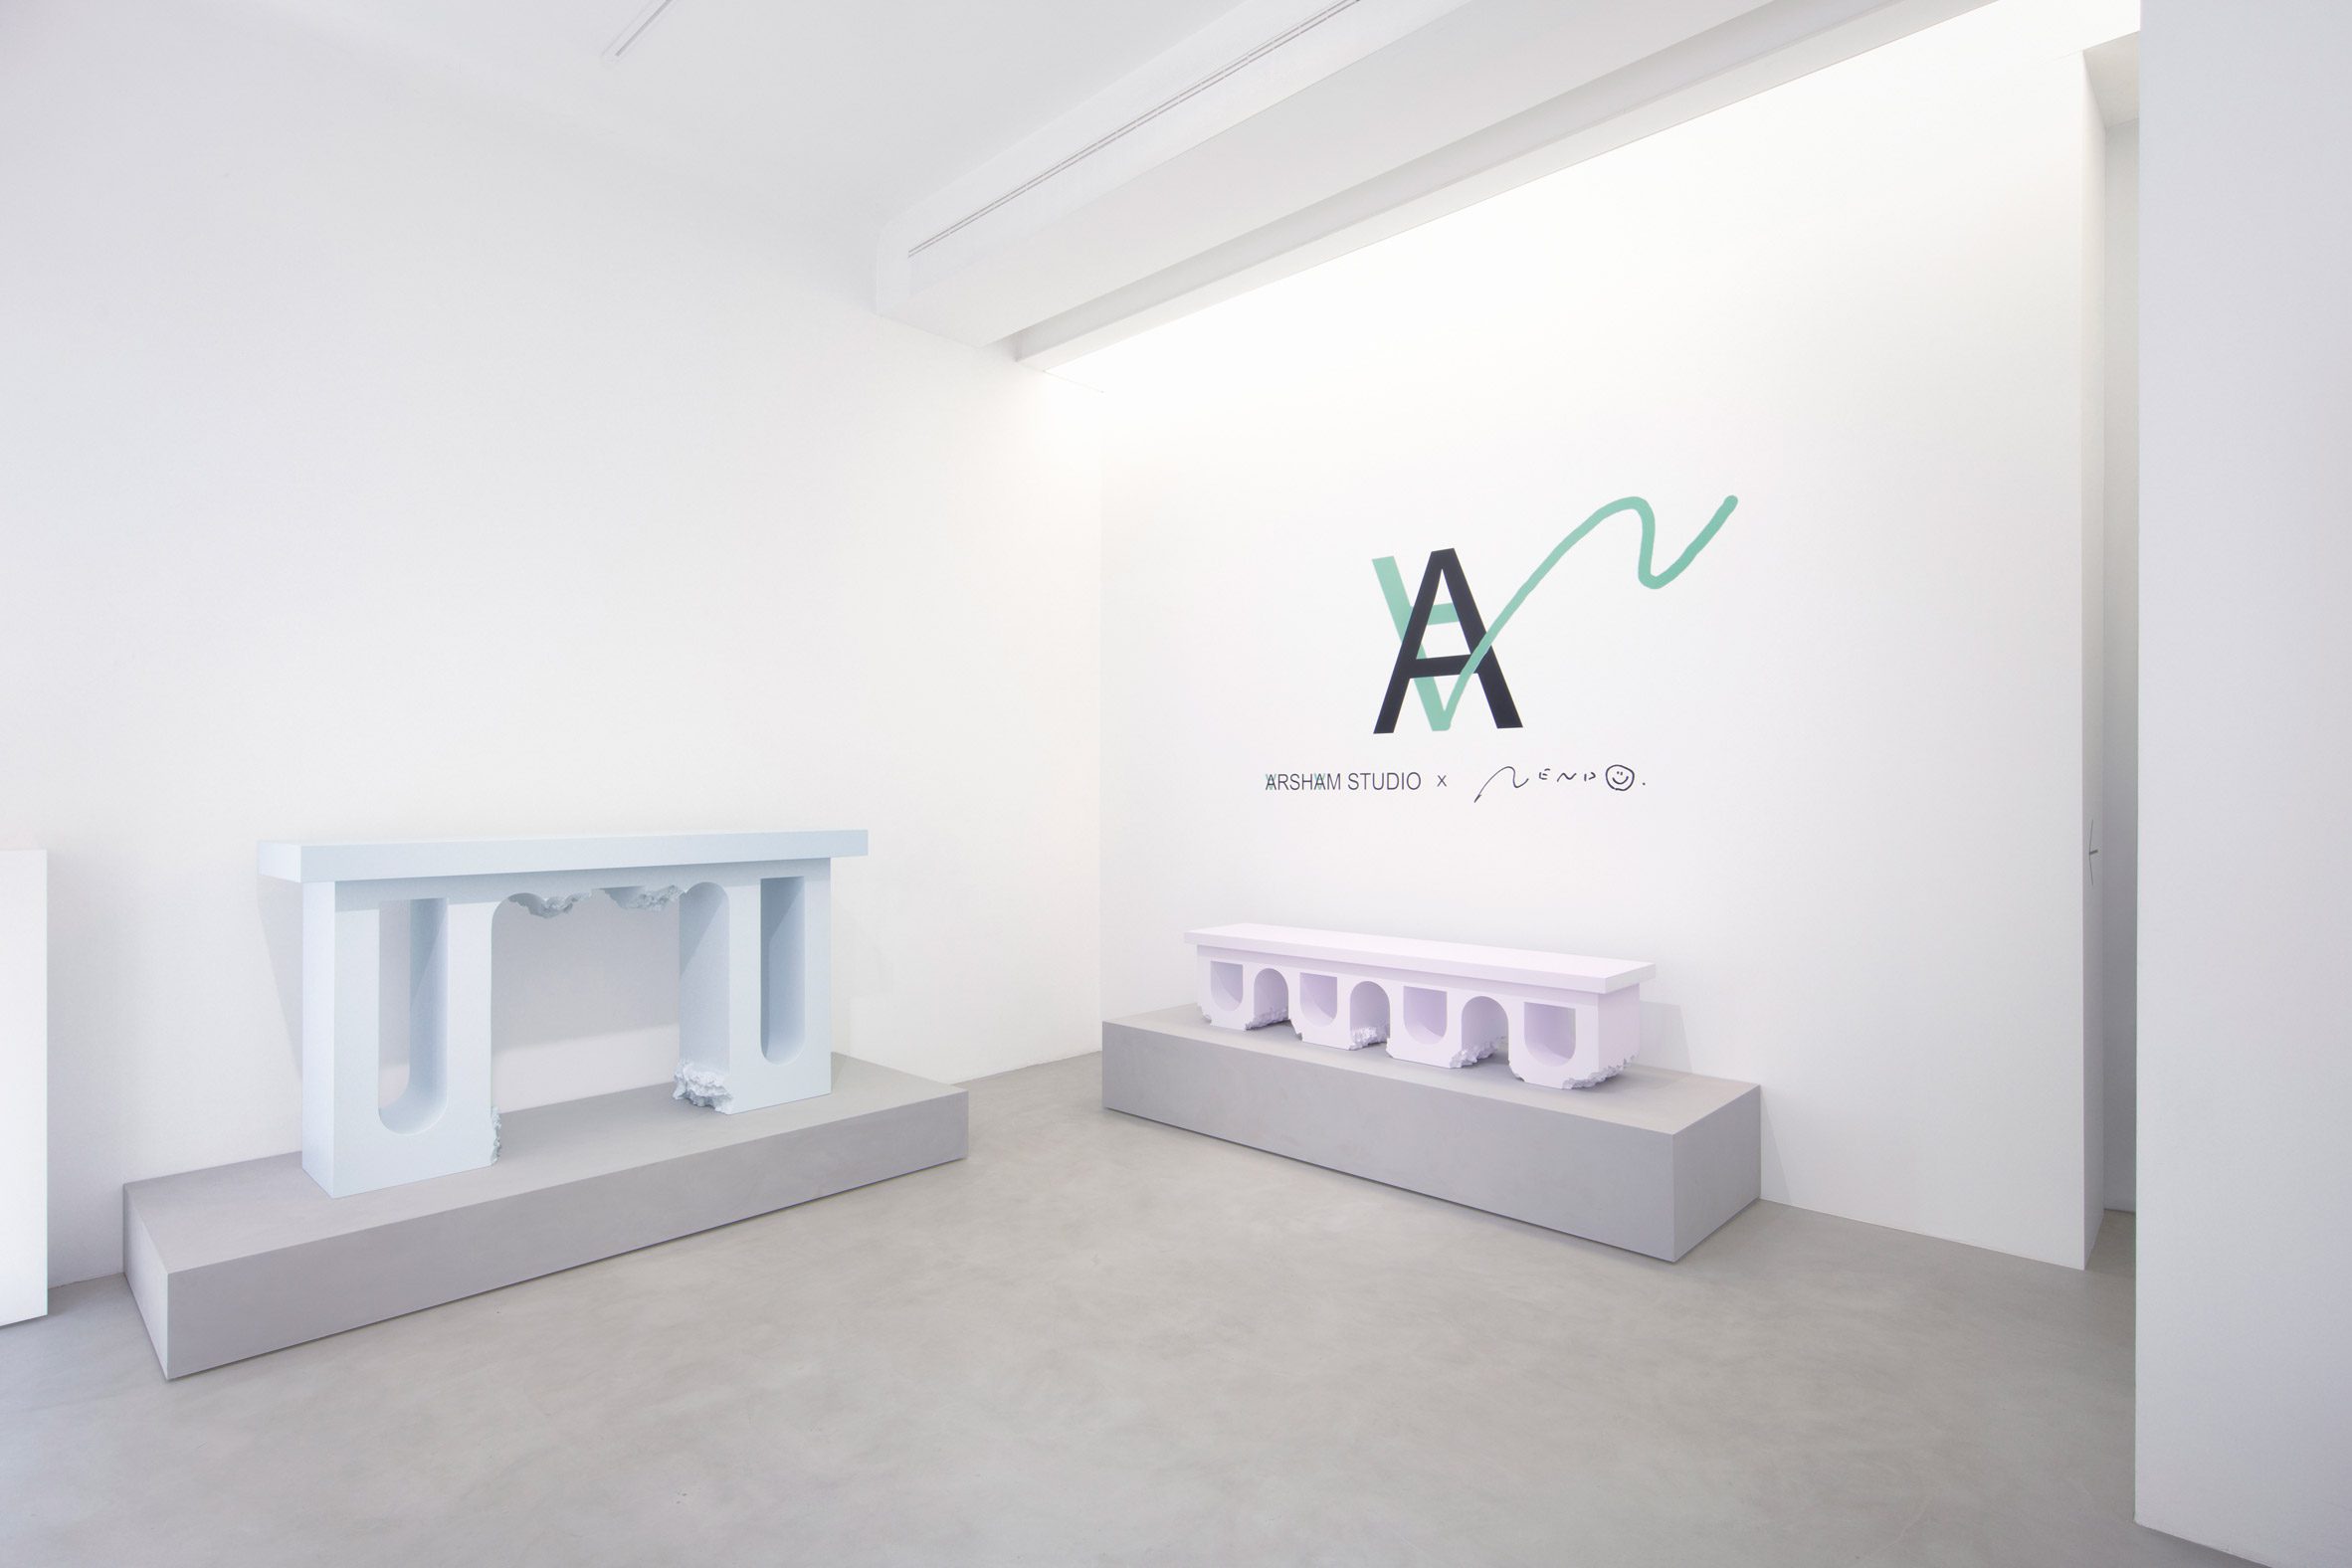 Collection of styrofoam prototypes at Milan design week